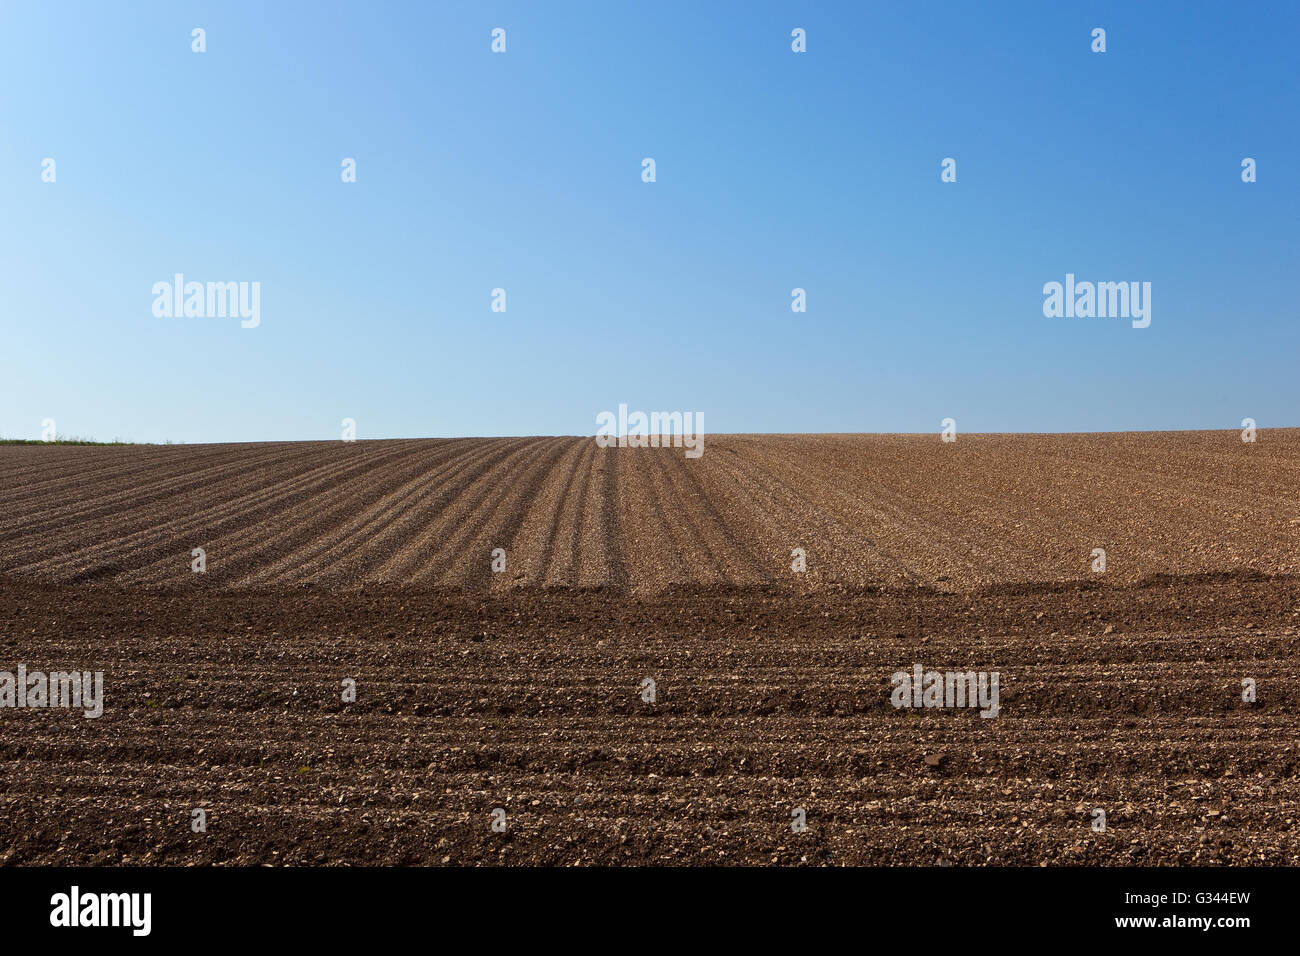 Les lignes et les modèles de sol de craie sillons d'un champ planté de pommes de terre sous un ciel bleu clair sur les Yorkshire Wolds. Banque D'Images